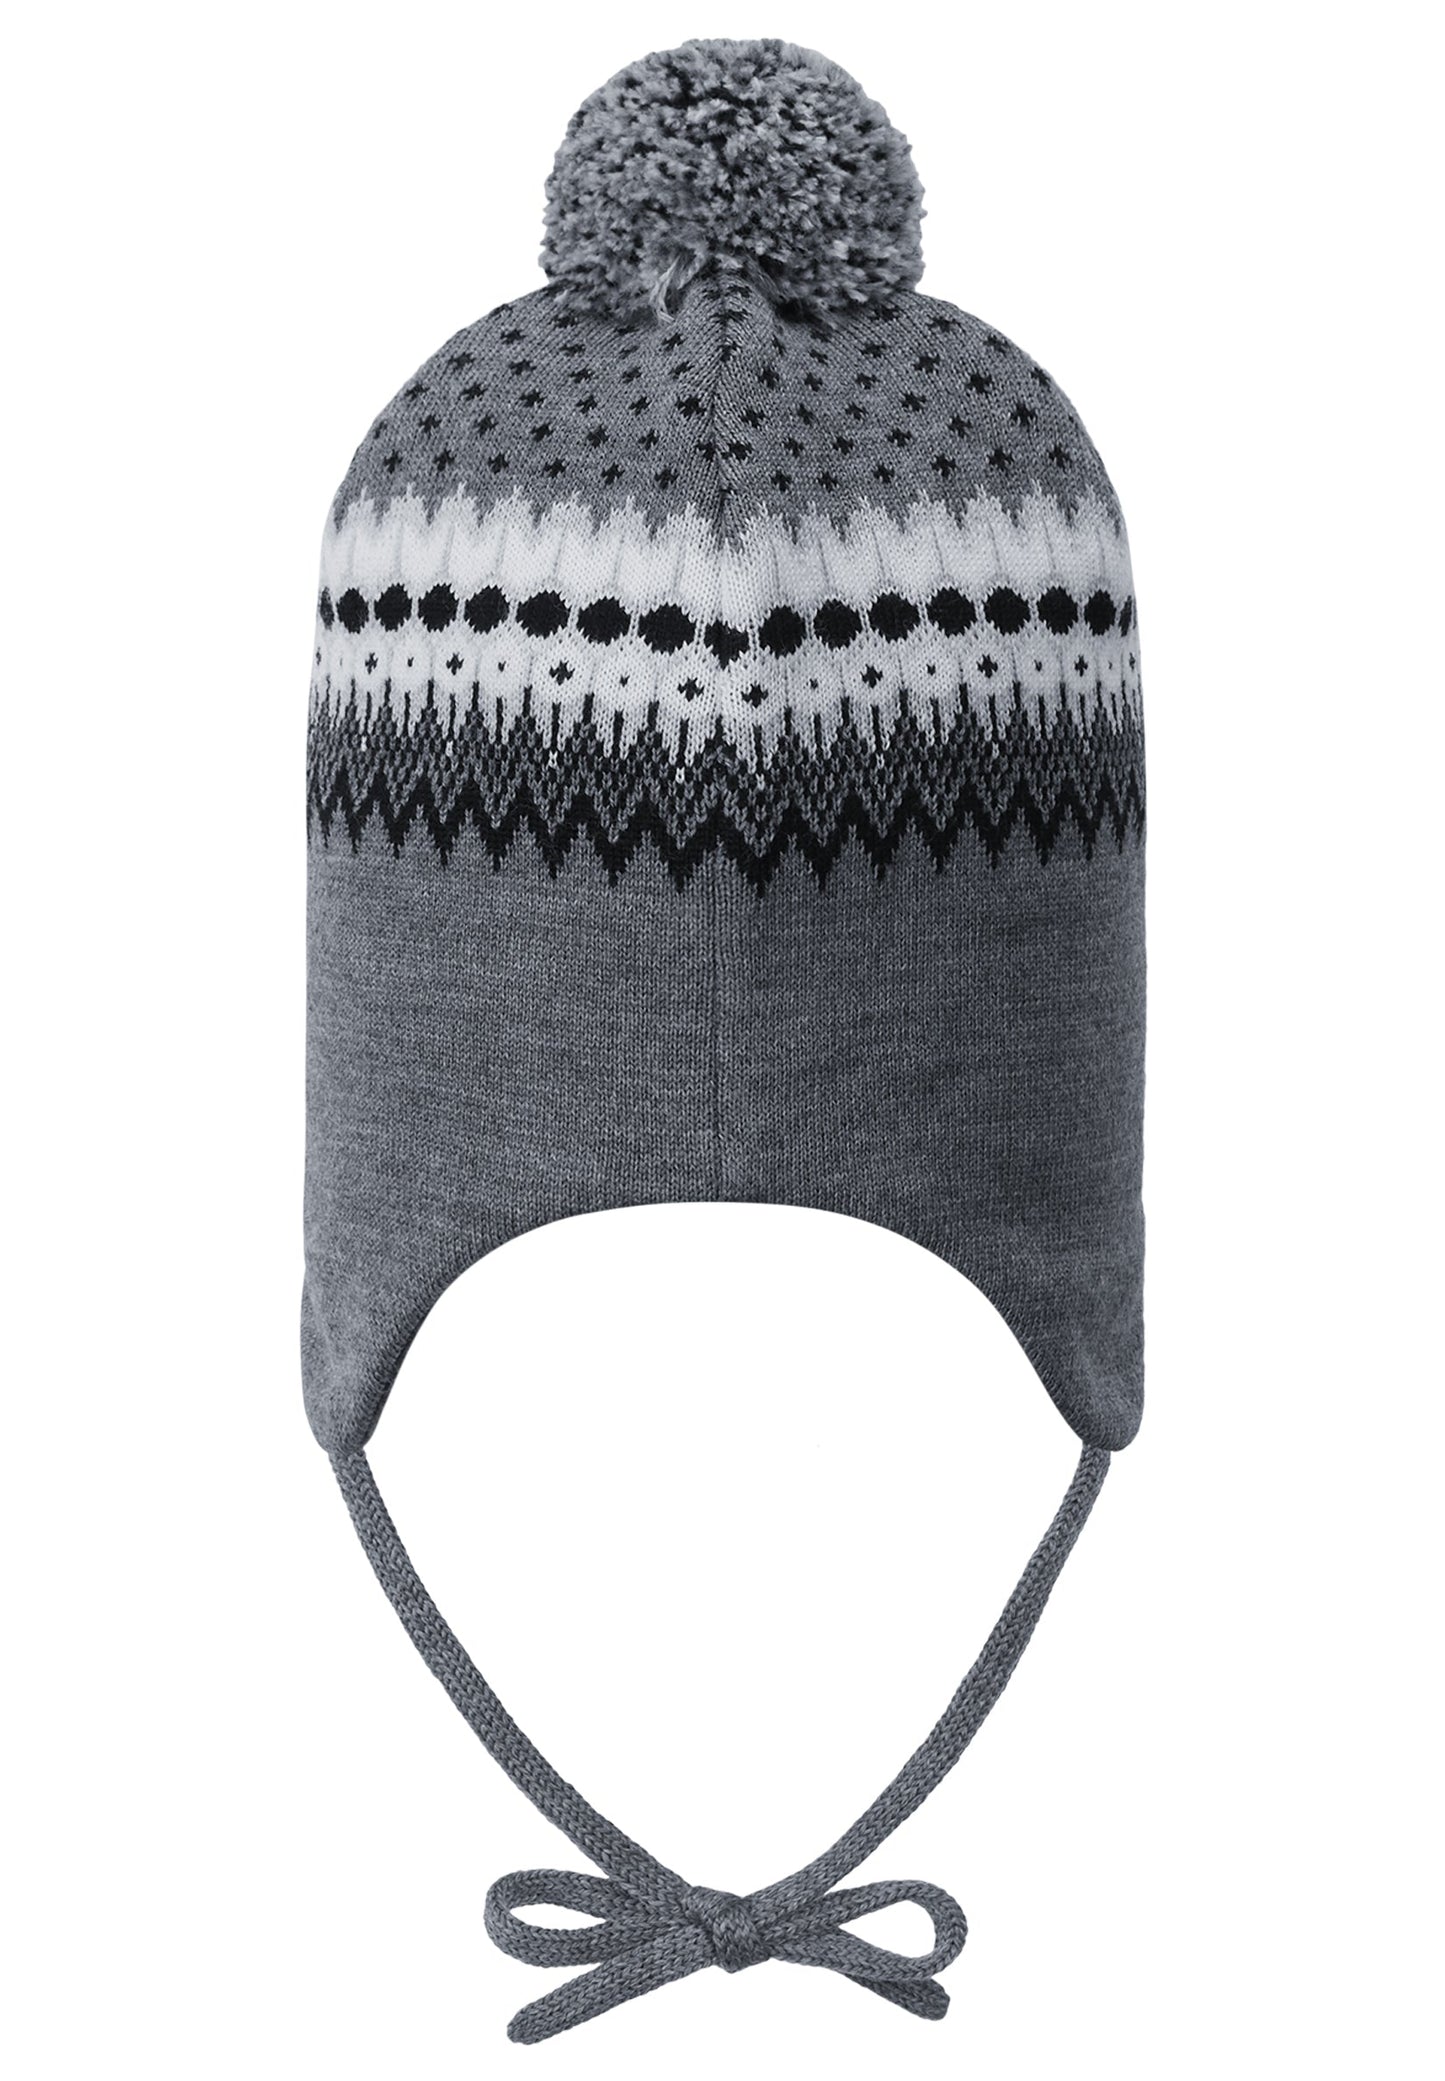 Reima Mütze mit Bändel AKTIONSFARBE<br>Kuurainen <br>Gr. 46, 48 <br>innen hautfreundliche Bio-Baumwolle<br> aussen warme, wasserabweisende Merino-Wolle<br> Windstopper-Membrane im Ohrbereich